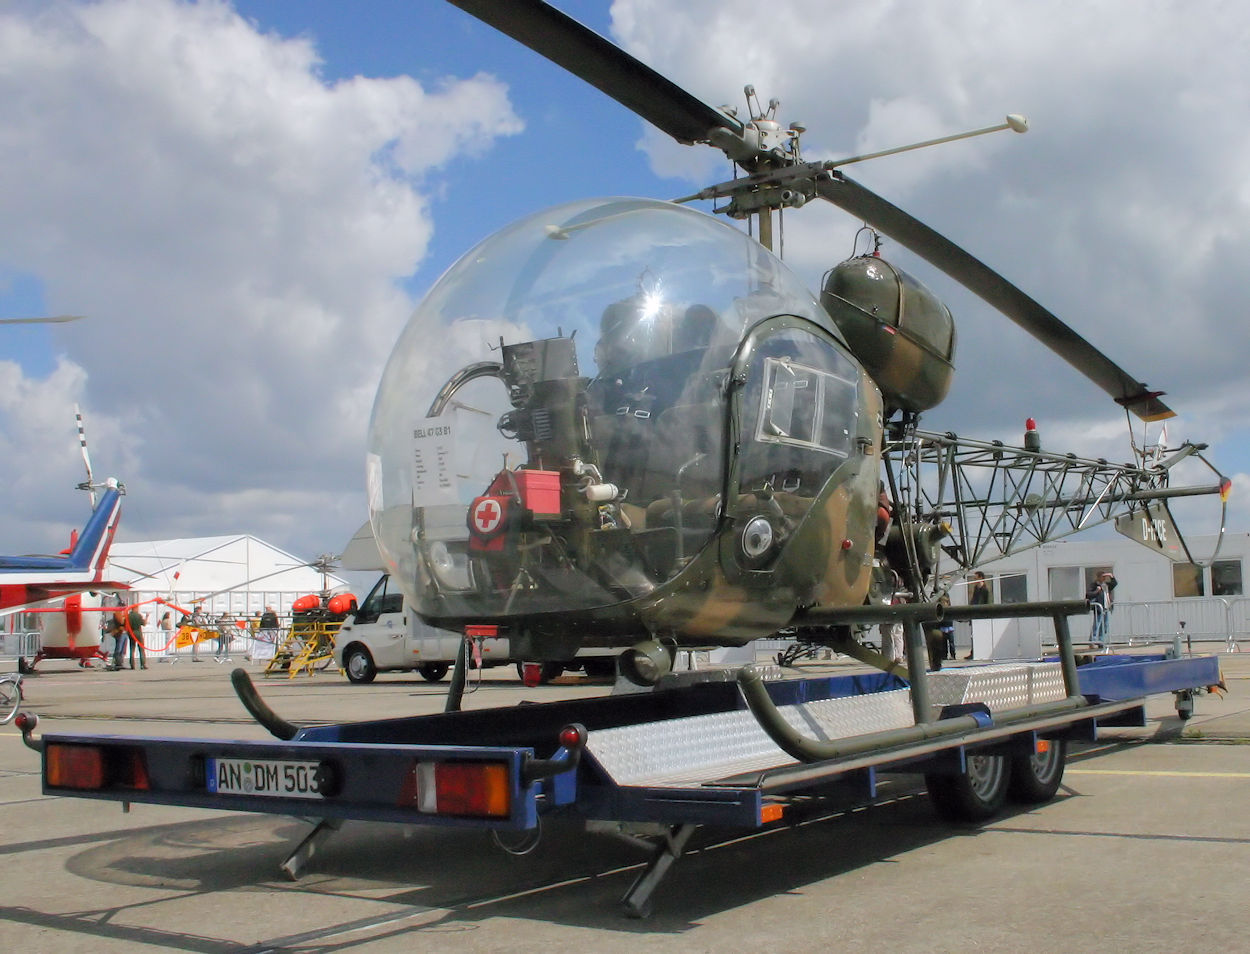 Bell 47 G3 - Hubschrauber